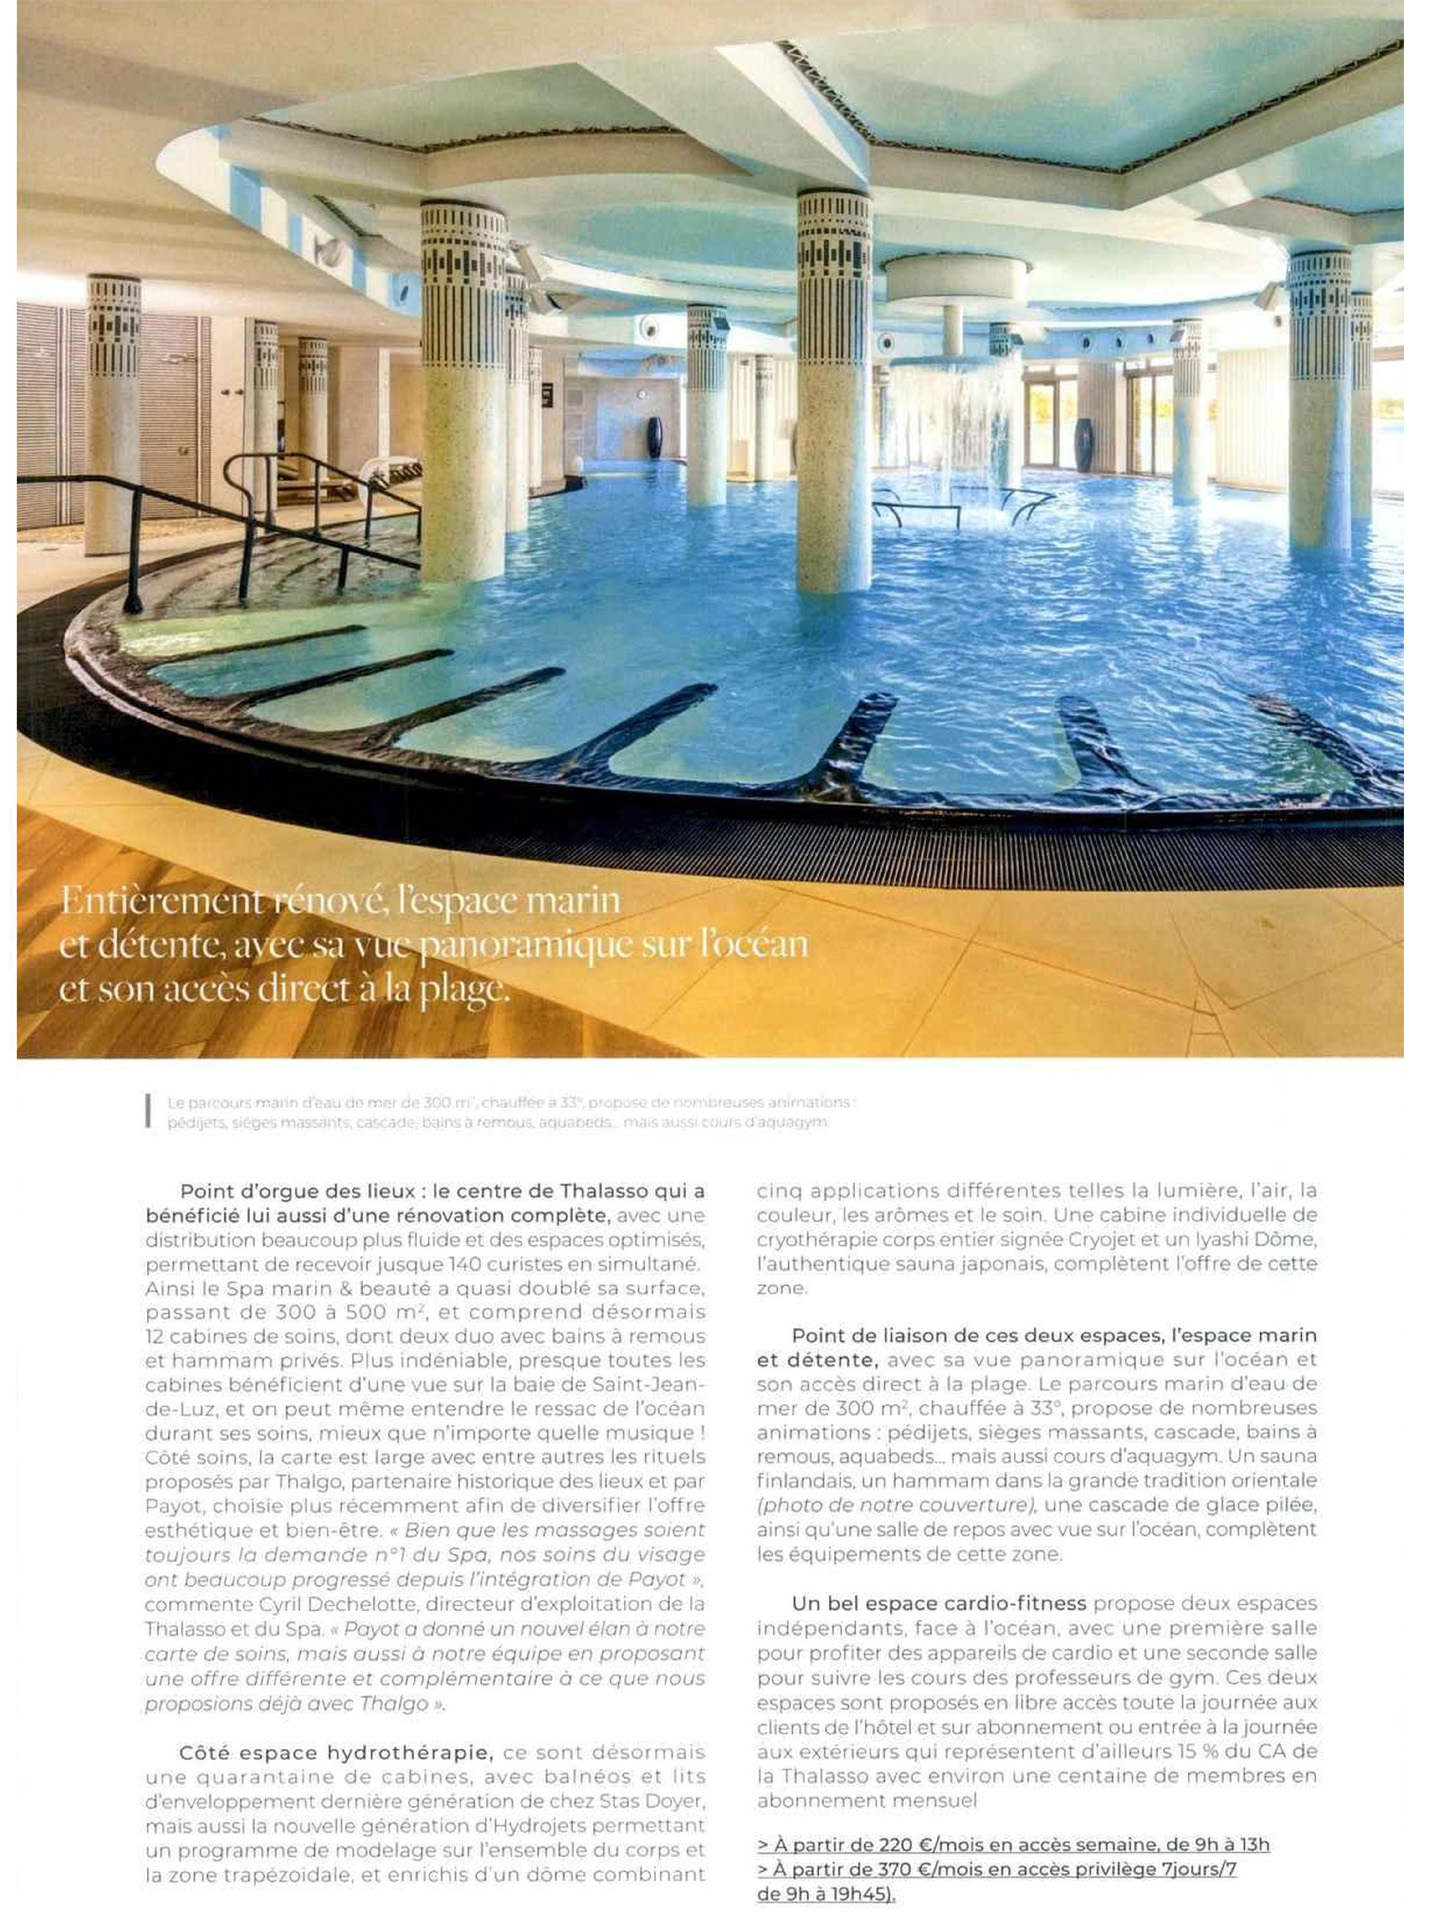 Article du magazine Sense of Wellness sur l'hôtel et spa Hélianthal Saint-Jean-de-Luz, hôtel lifestyle, Art déco, hotel de bord de mer, dans le pays basque français, culture basque